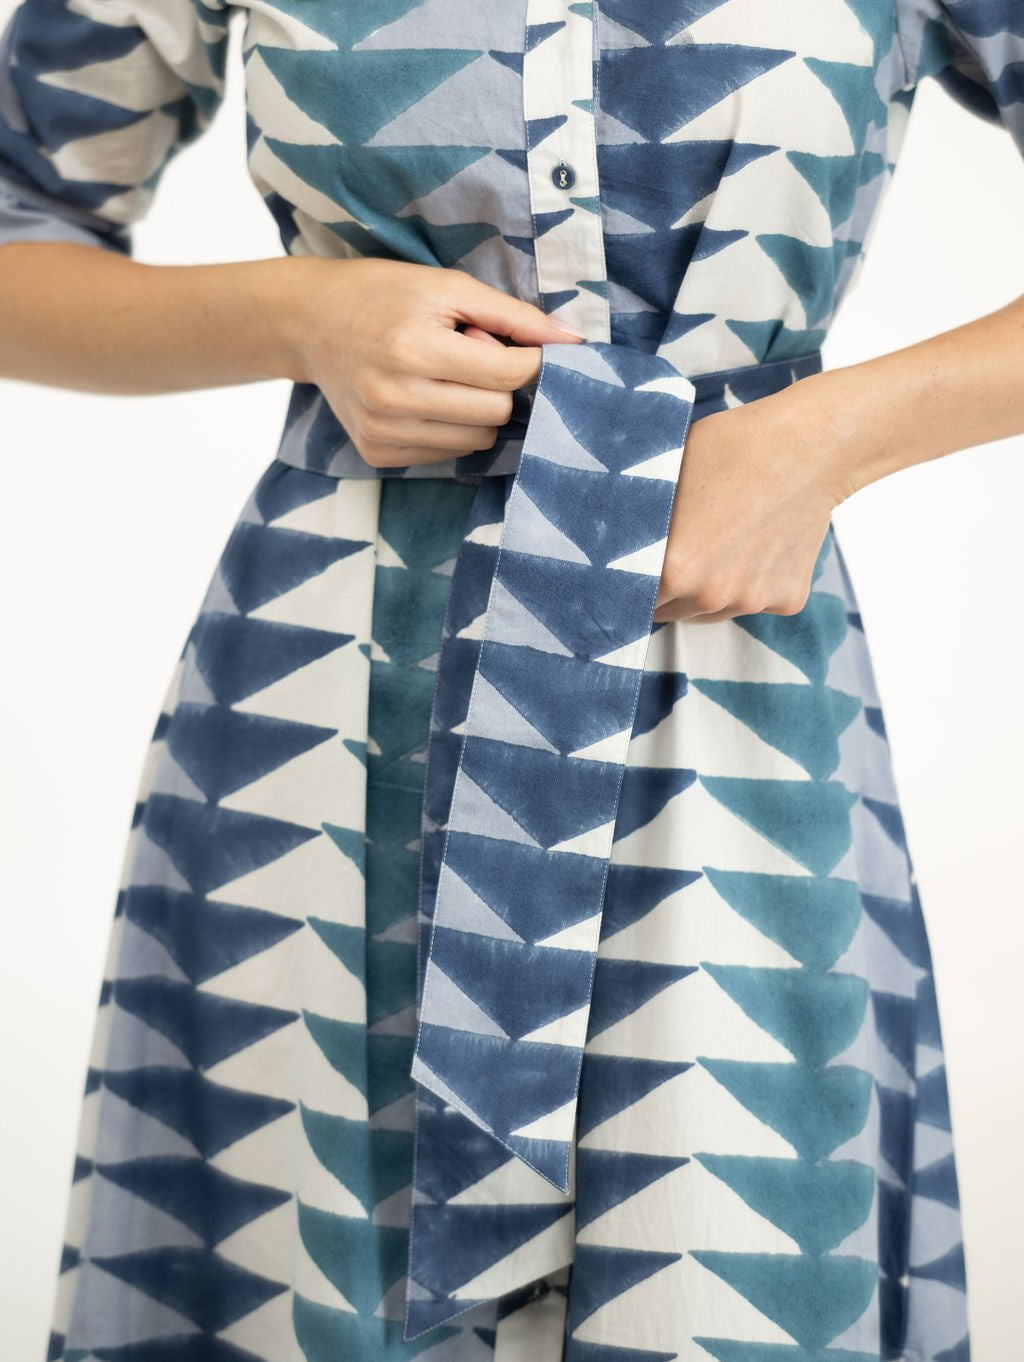 Beau & Ro Dress The Eloise Shirt Dress | Blue Bagru Triangle